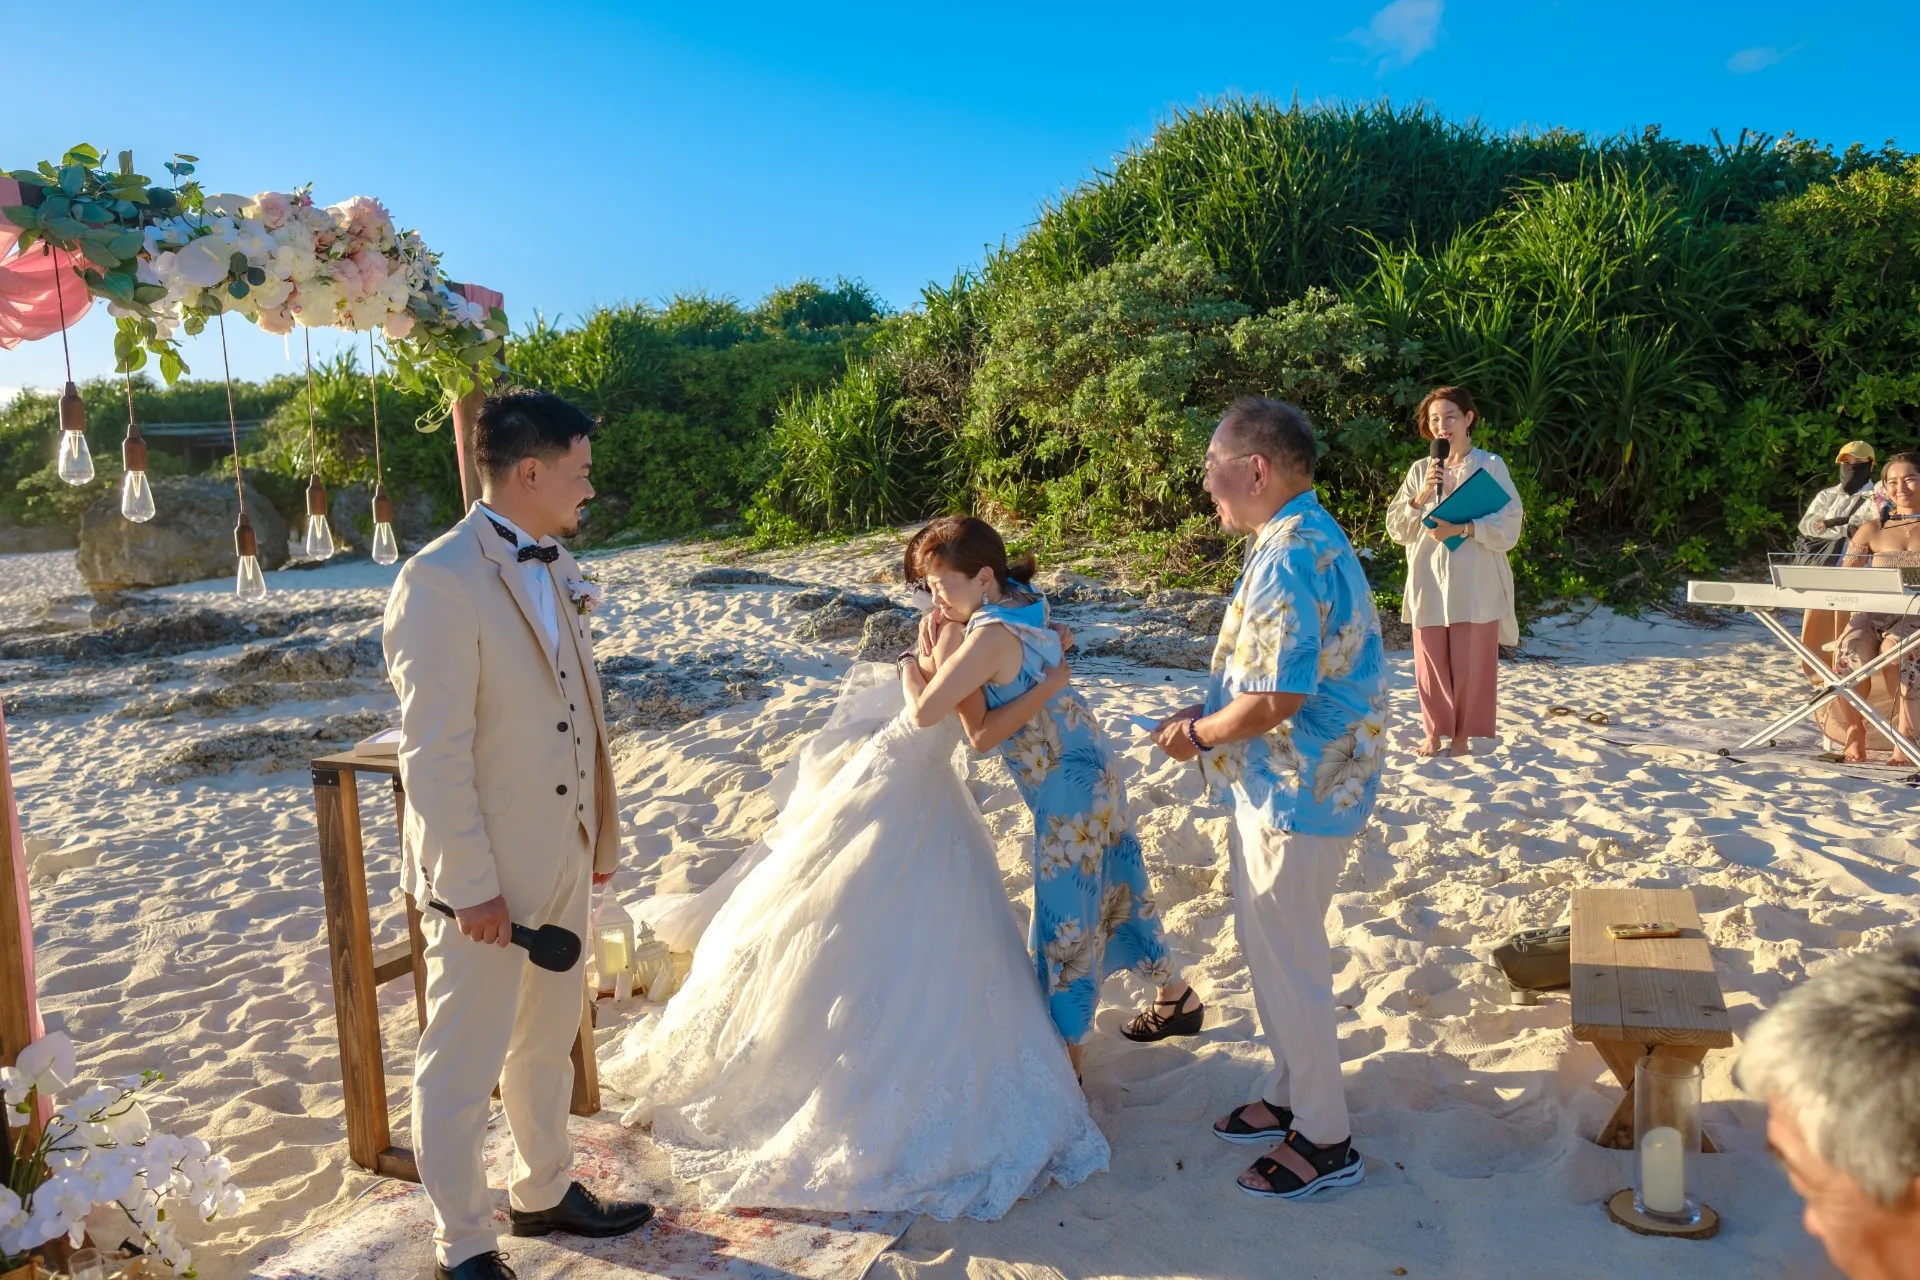 The Beach Ceremony